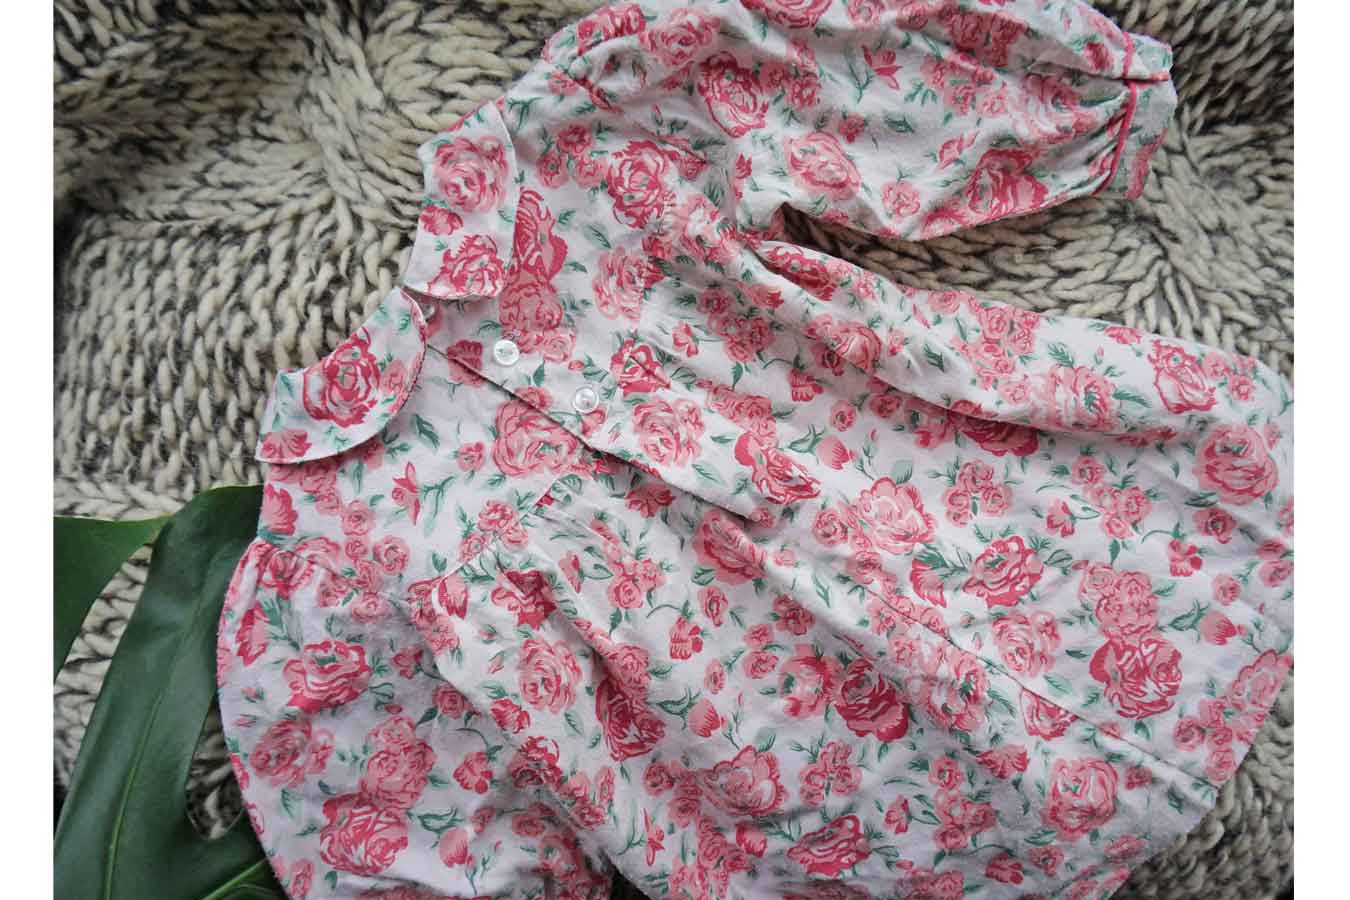 Vintage Baby Girls Pink Floral Easter Dress - vintage baby girls clothes uk - ada's attic vintage